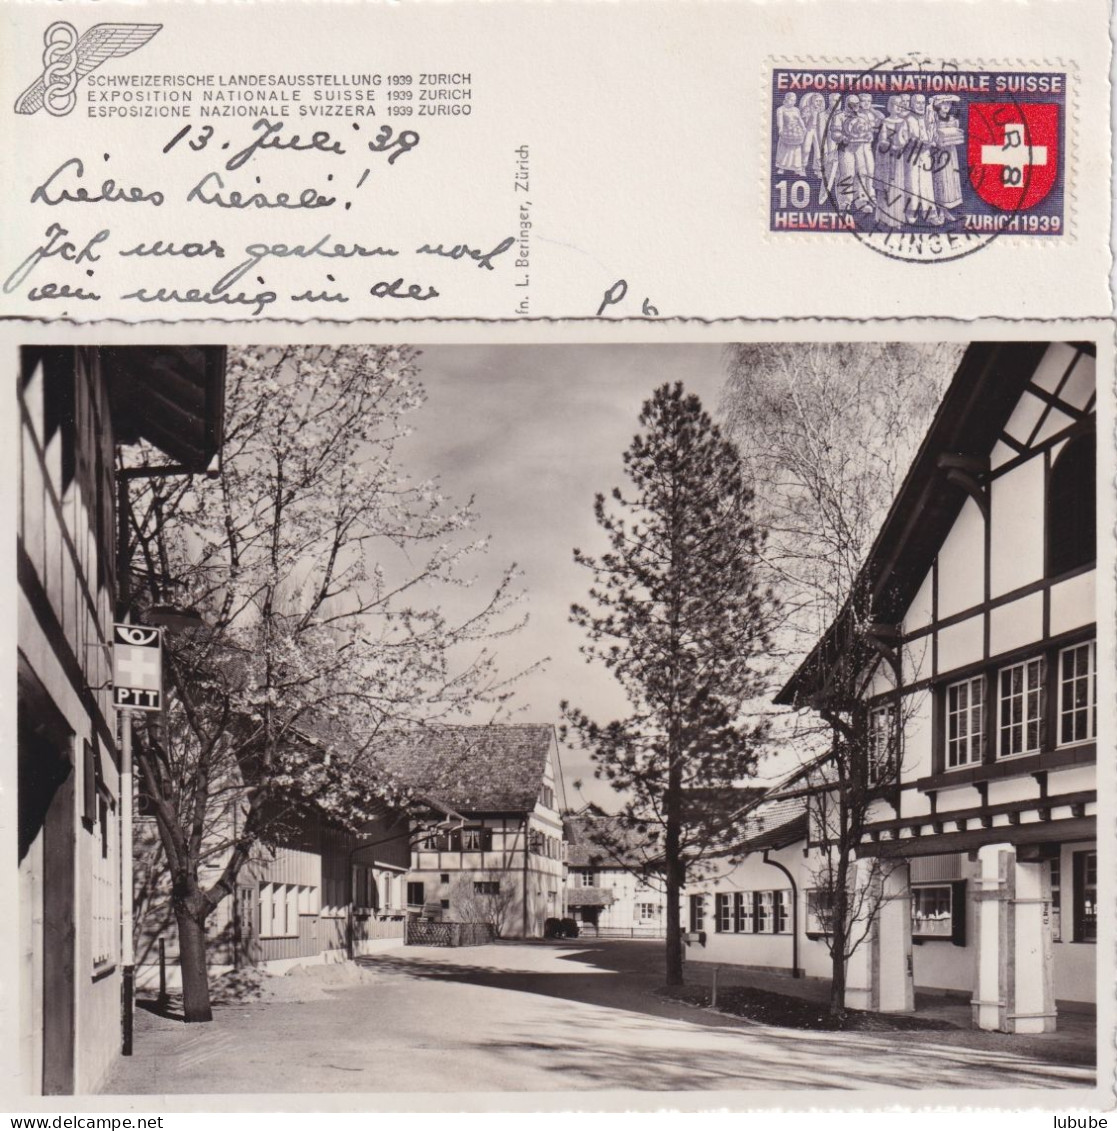 Zürich - Schweiz. Landesausstellung - Riesbach, Dörfli  (Postamt Links)        1939 - Zürich